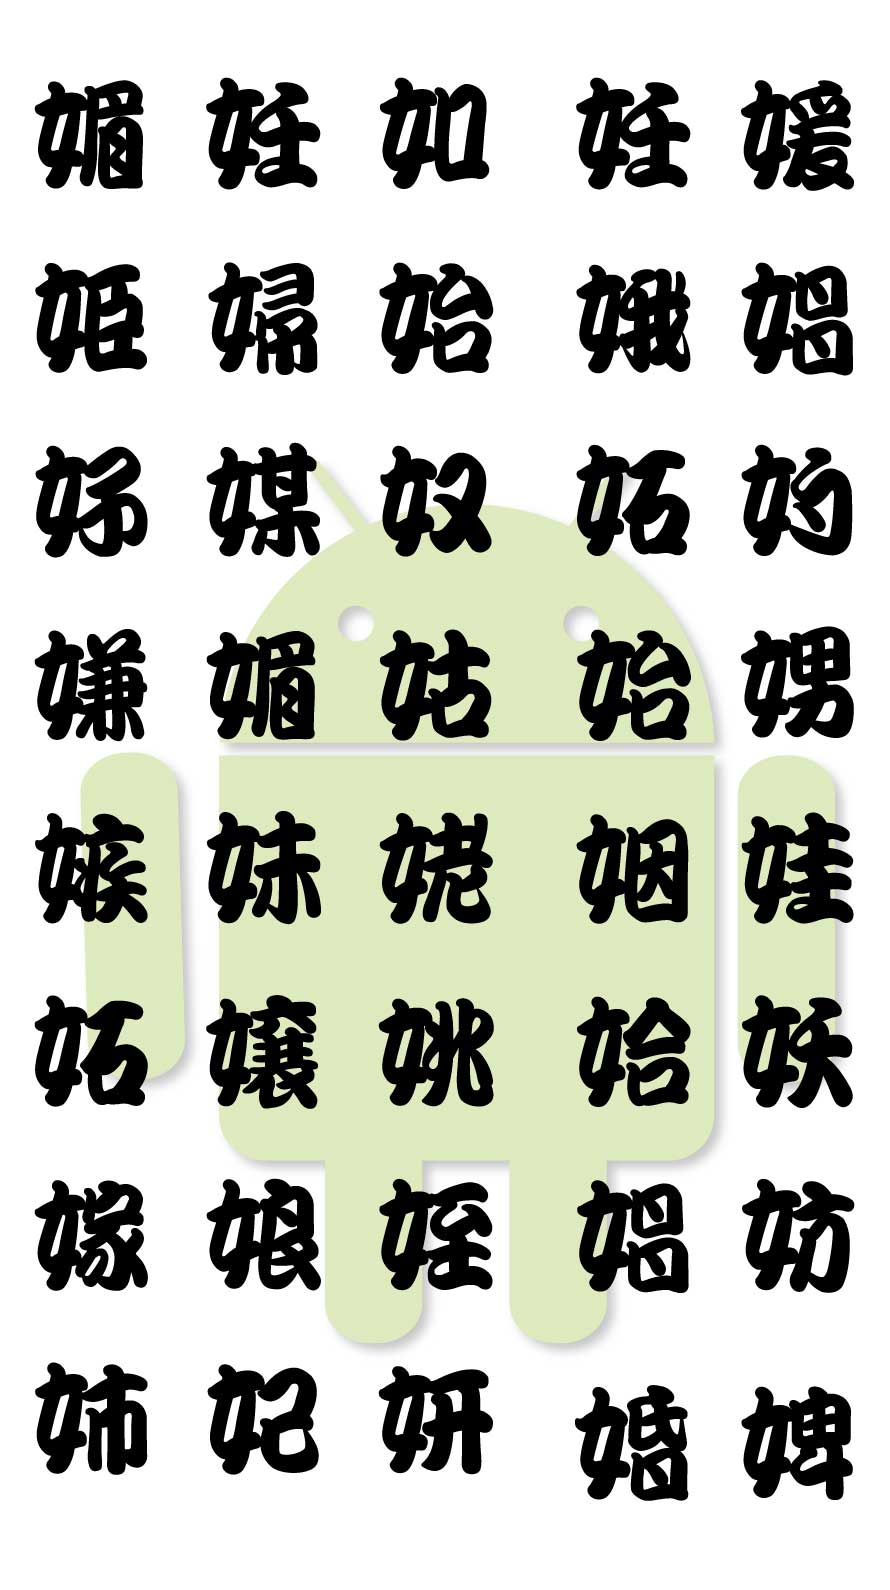 エロ注意 超恥ずかしいジョーク壁紙 魚漢字湯のみ風の隠語漢字の待ち